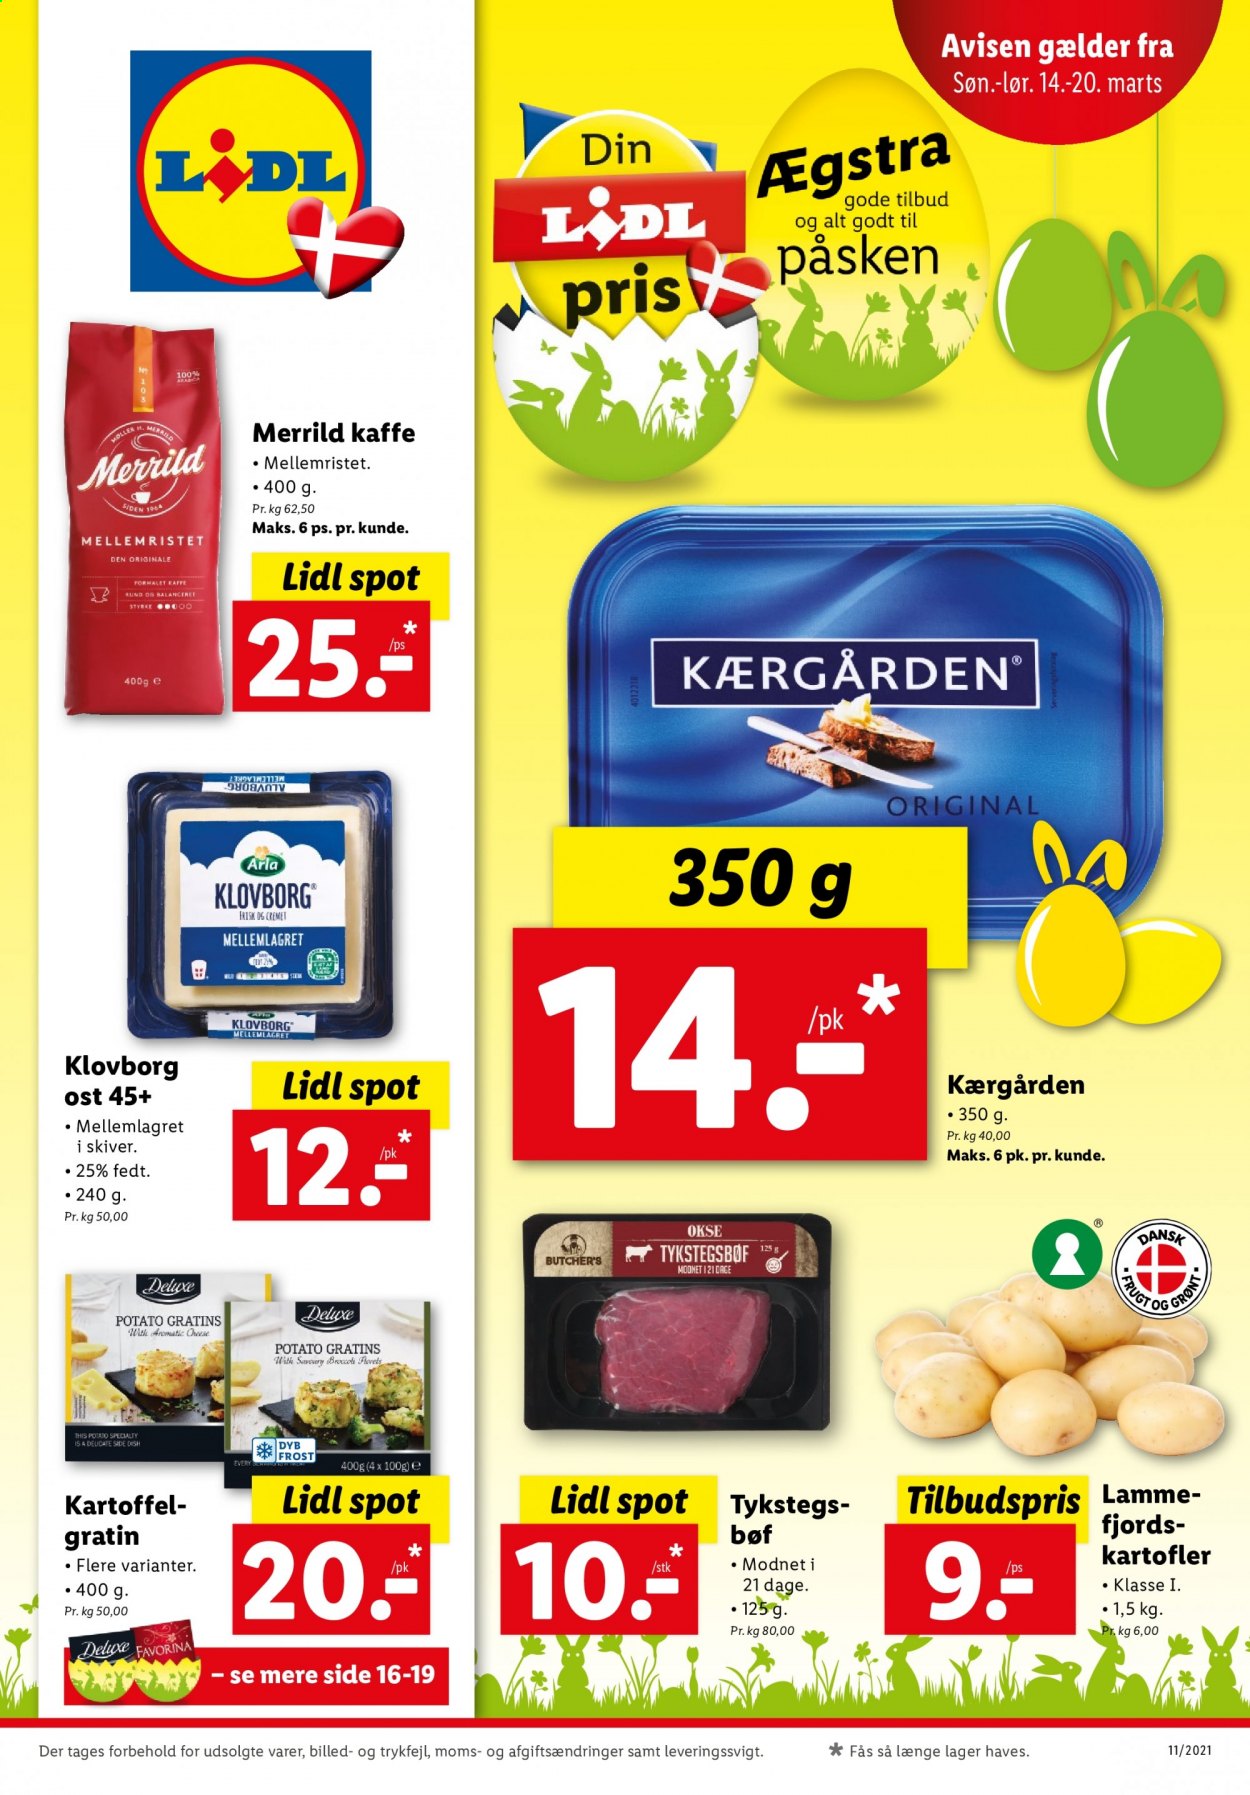 thumbnail - Lidl tilbud  - 14.3.2021 - 20.3.2021 - tilbudsprodukter - kartofler, tykstegsbøf, Arla, klovborg, Kærgården, kaffe. Side 1.